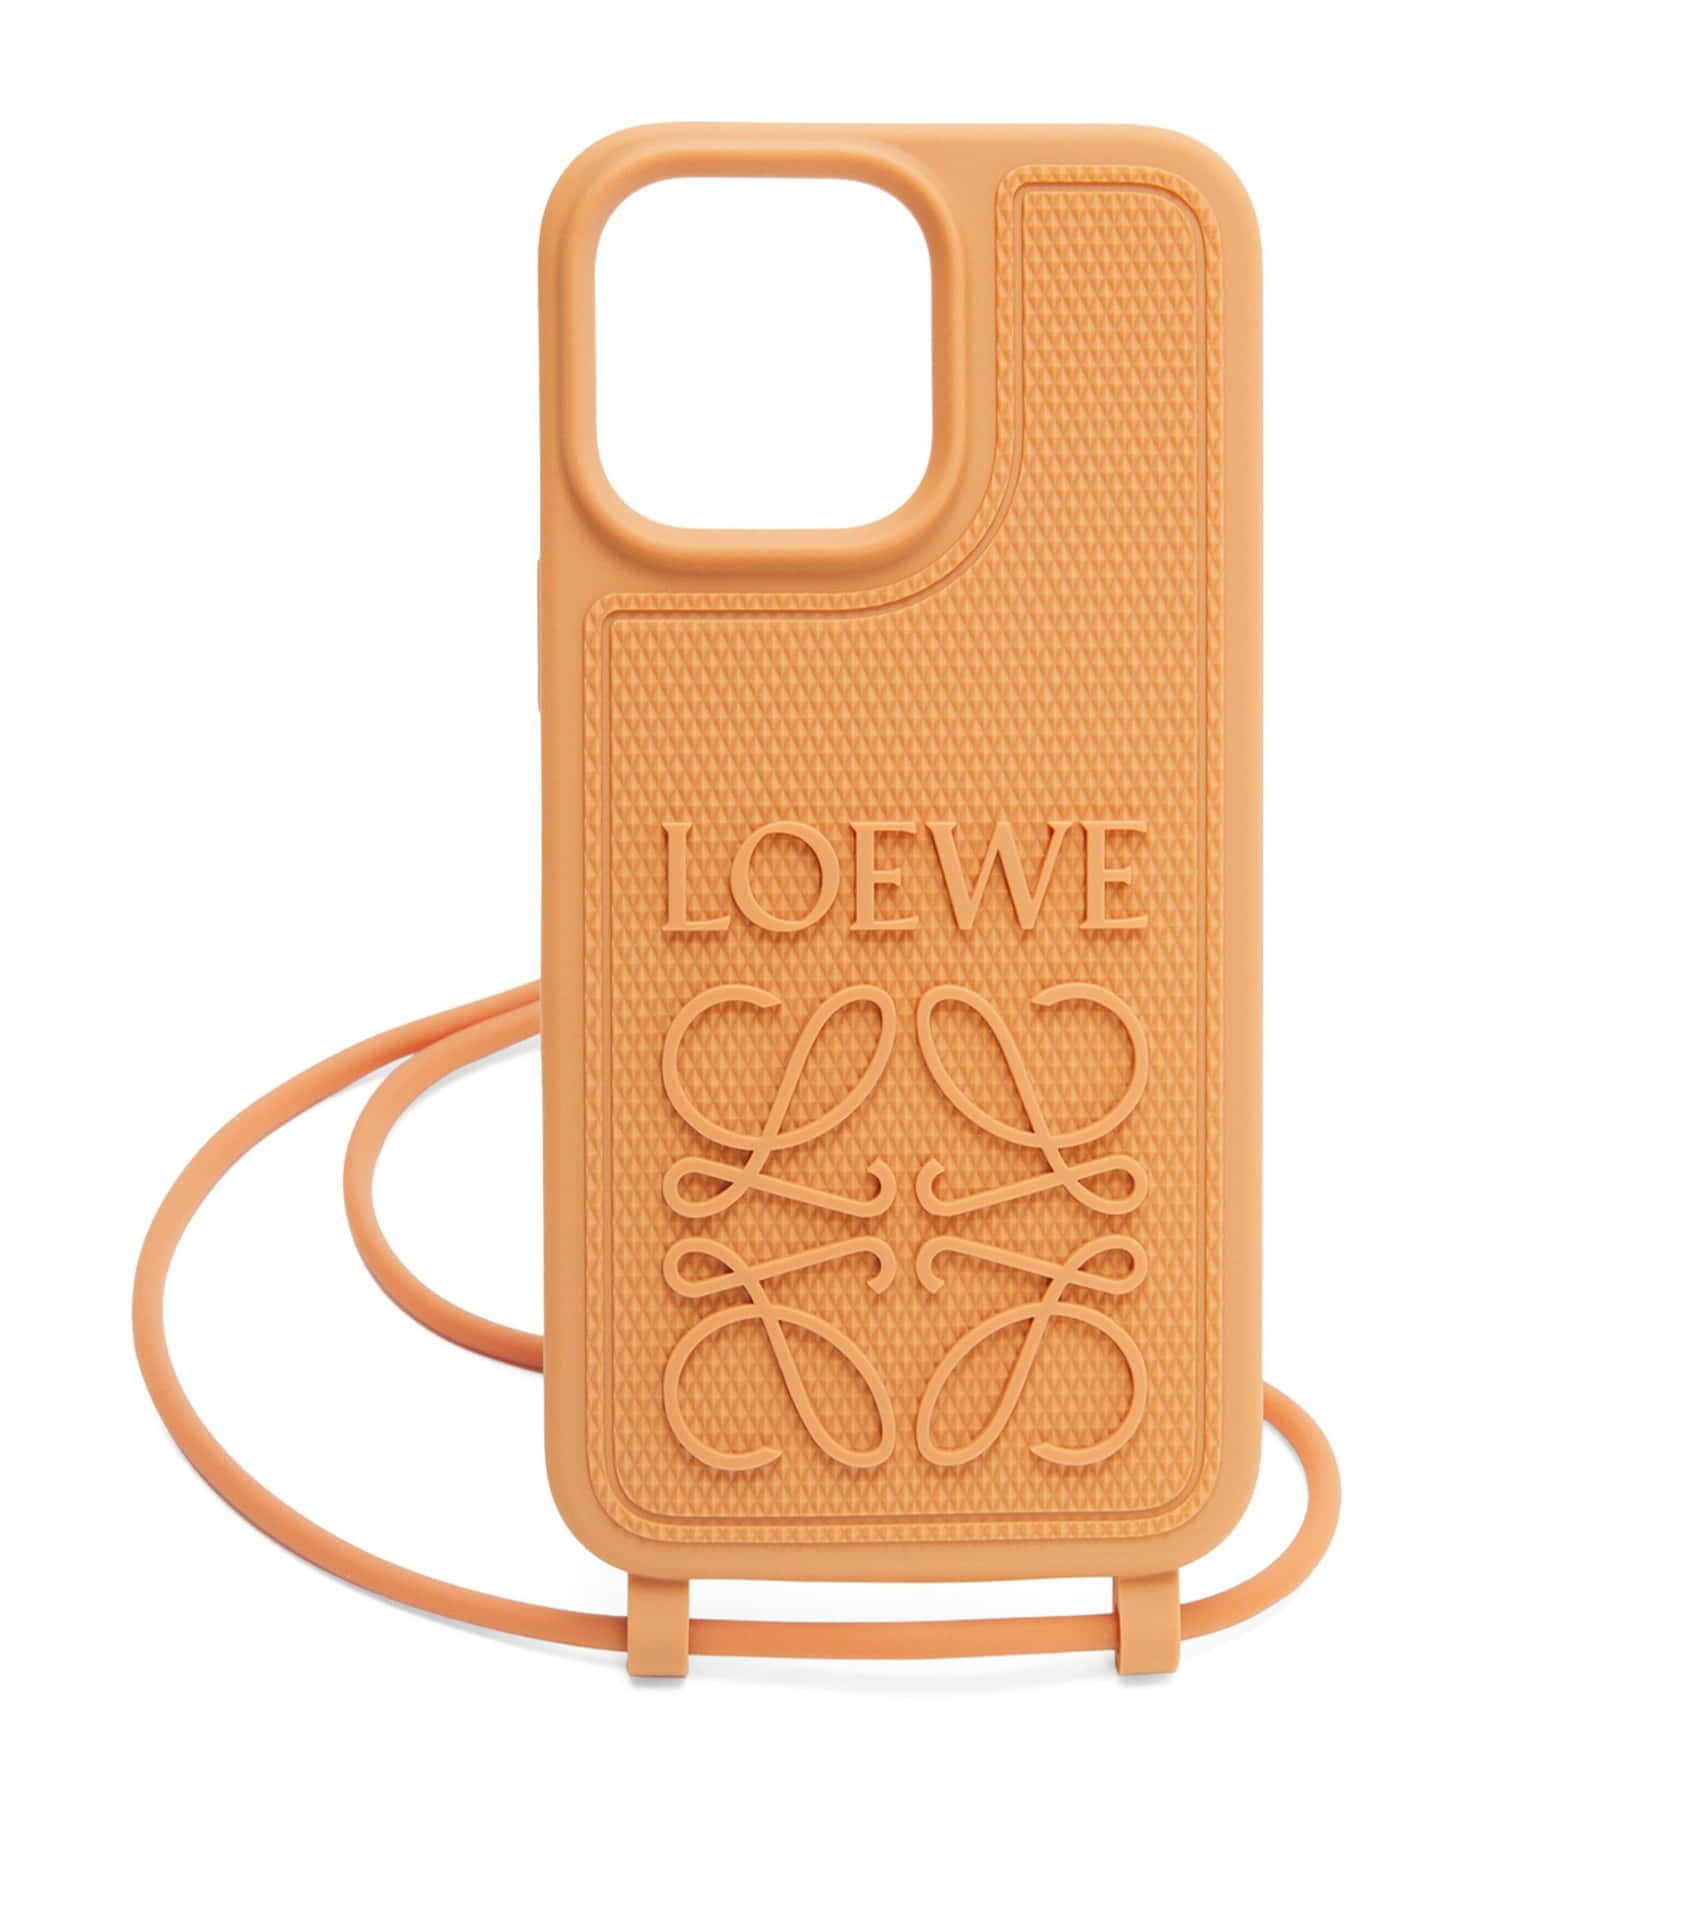 Handyhüllemit Loewe Logo Bild